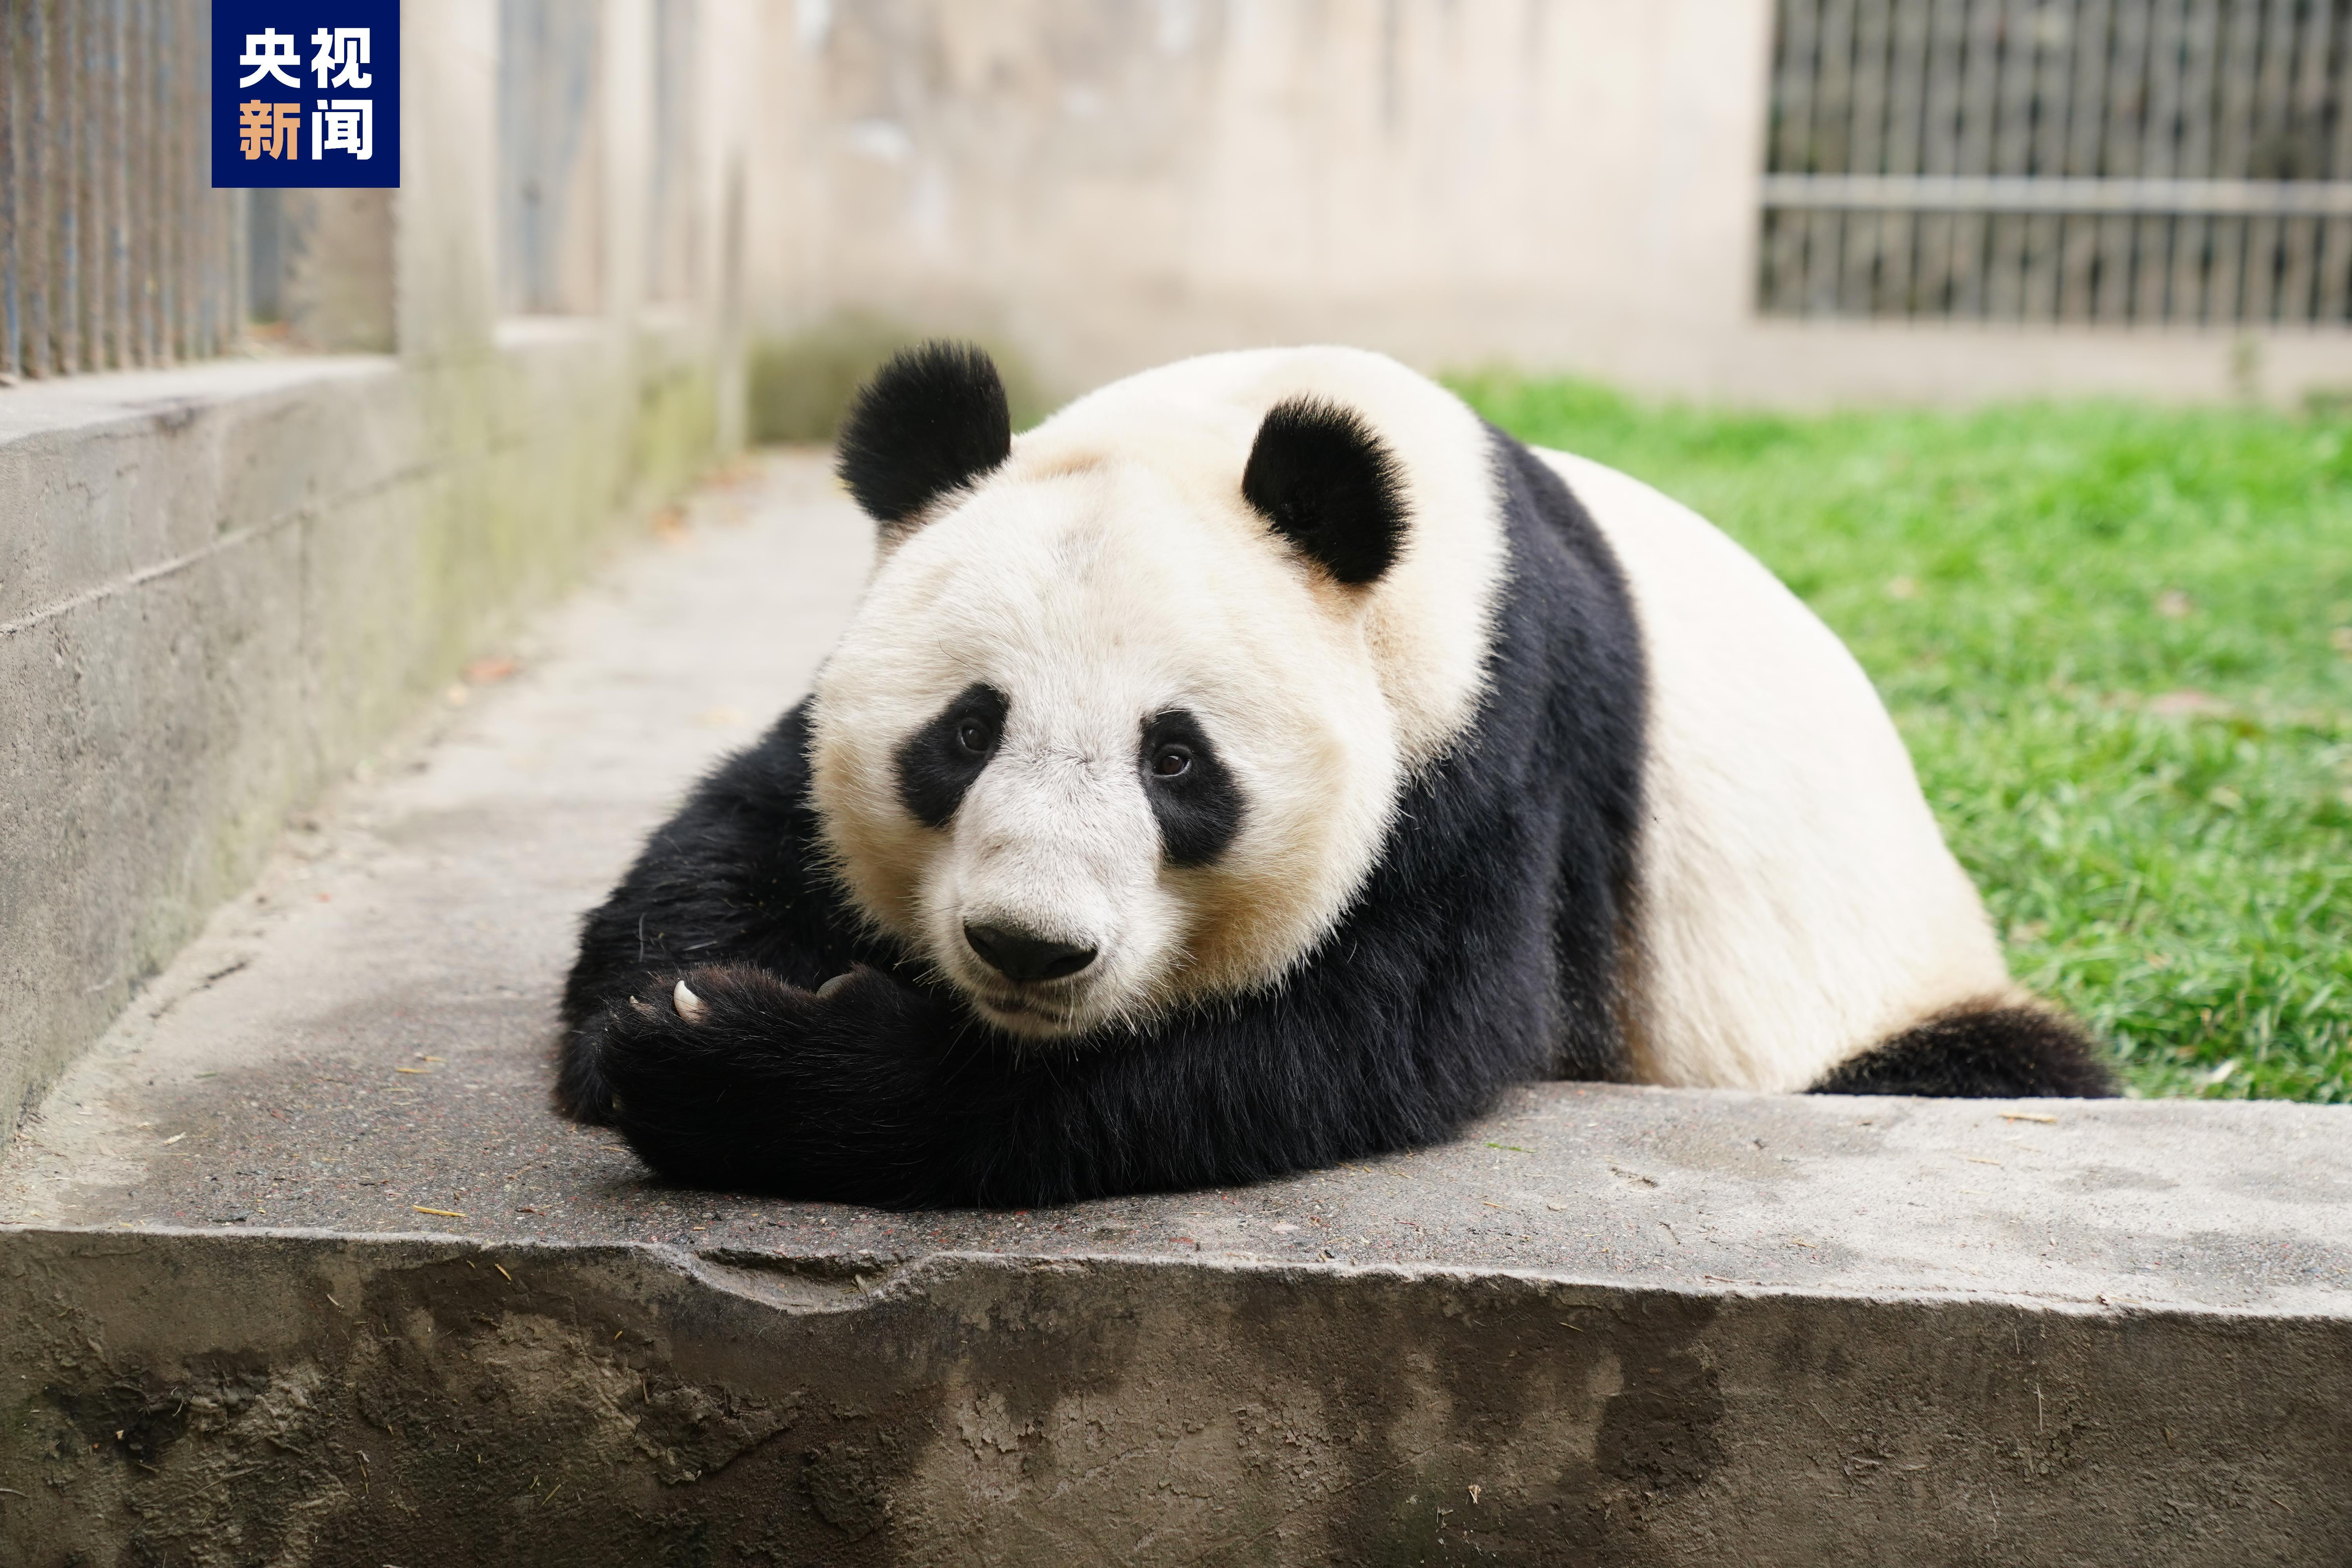 兰州野生动物园大熊猫亮相　四小只吃笋玩耍萌得嘞